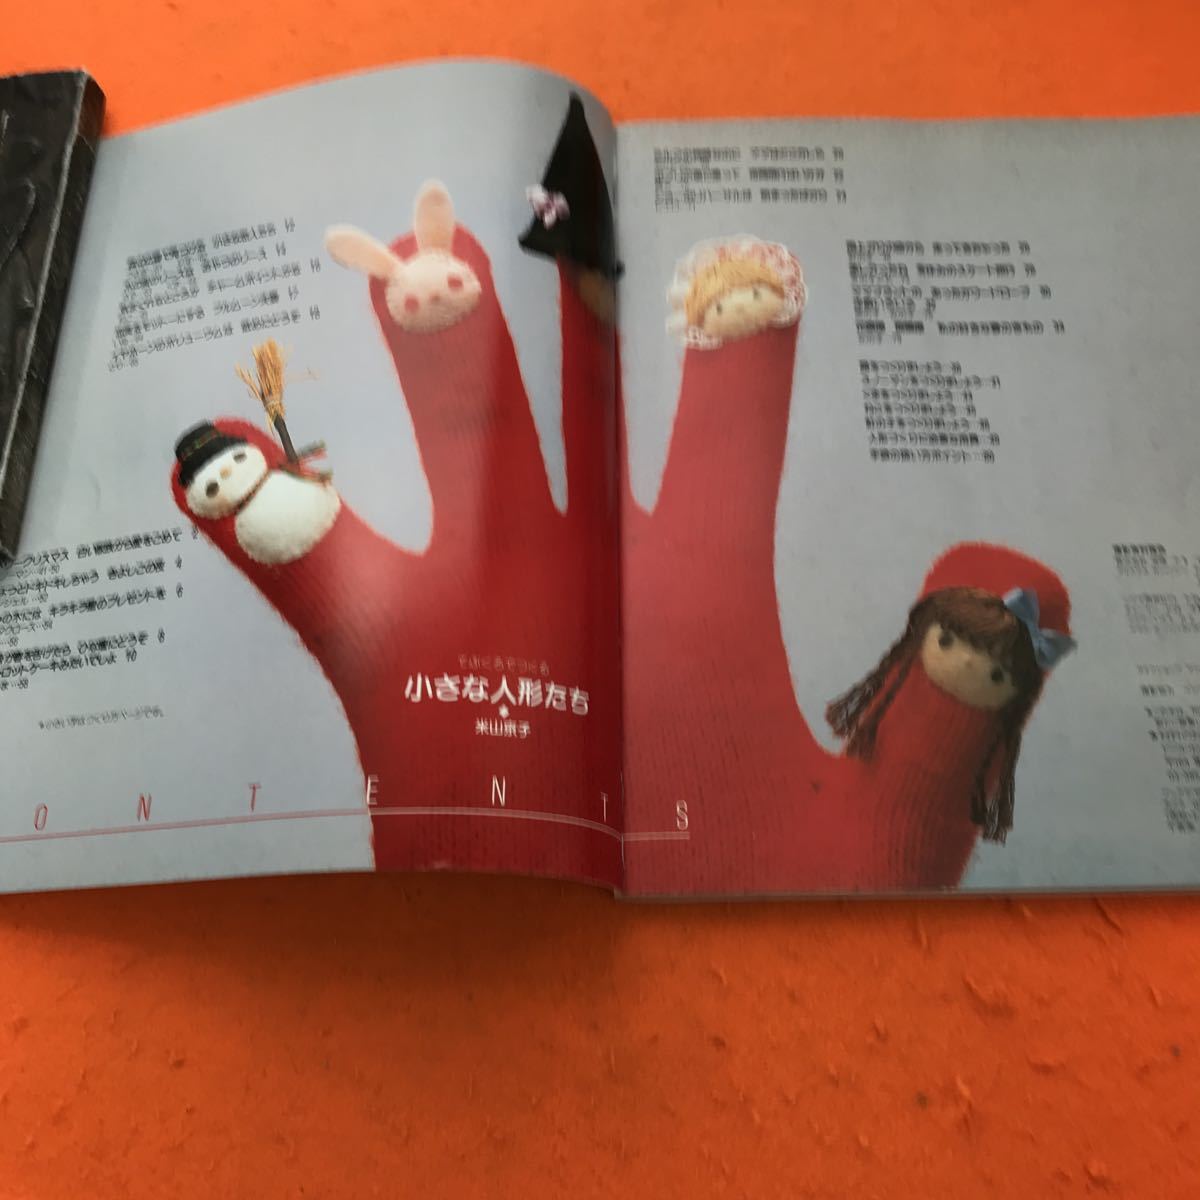 E66-015 NHK 婦人百科 ハンドワーク てぶくろでつくる小さな人形たち 米山京子 日本放送出版協会_画像4